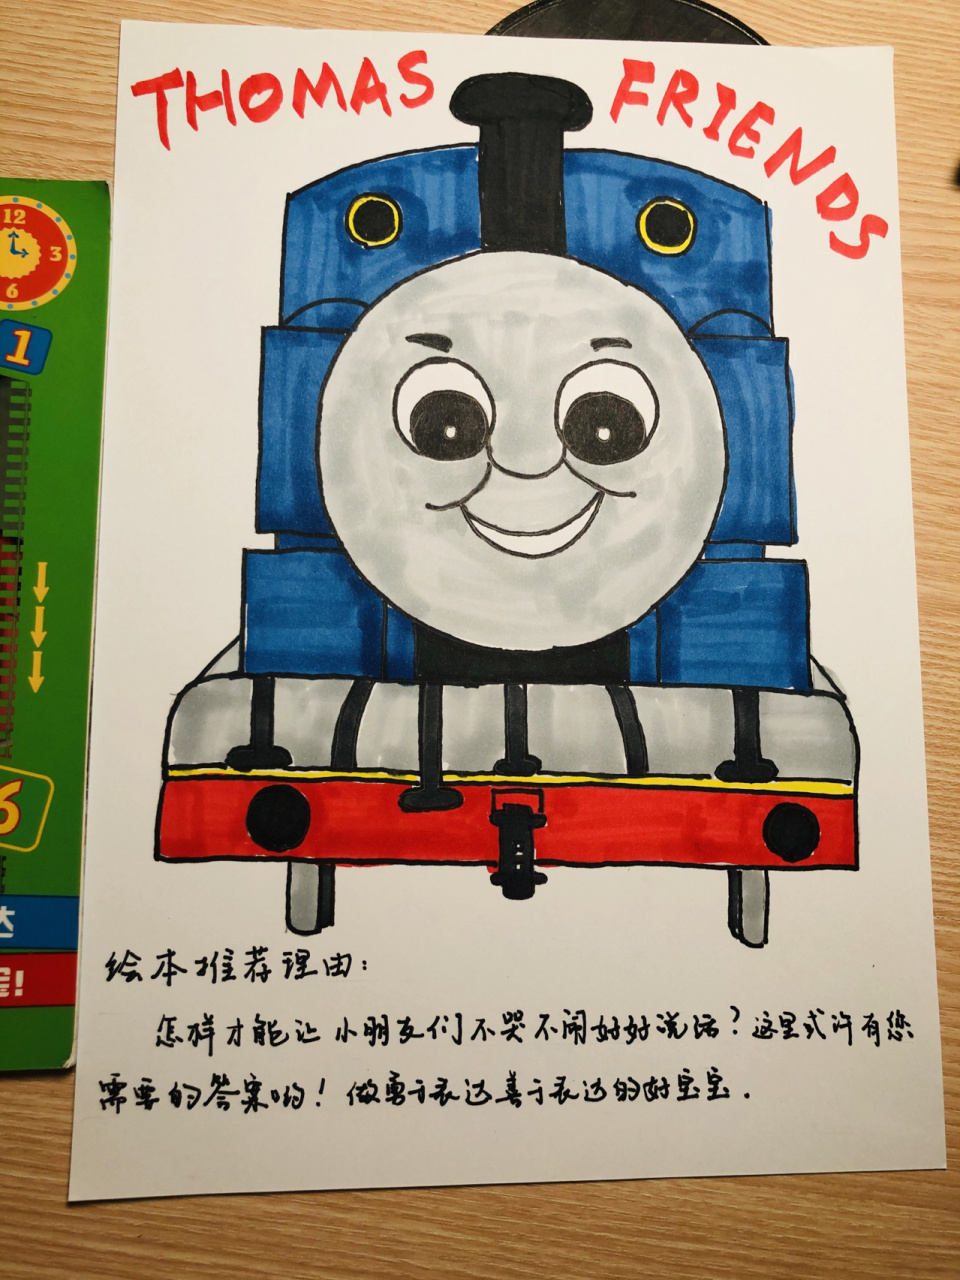 小朋友们都爱的托马斯小火车简笔画 幼儿园要求推荐情绪类绘本 然后要